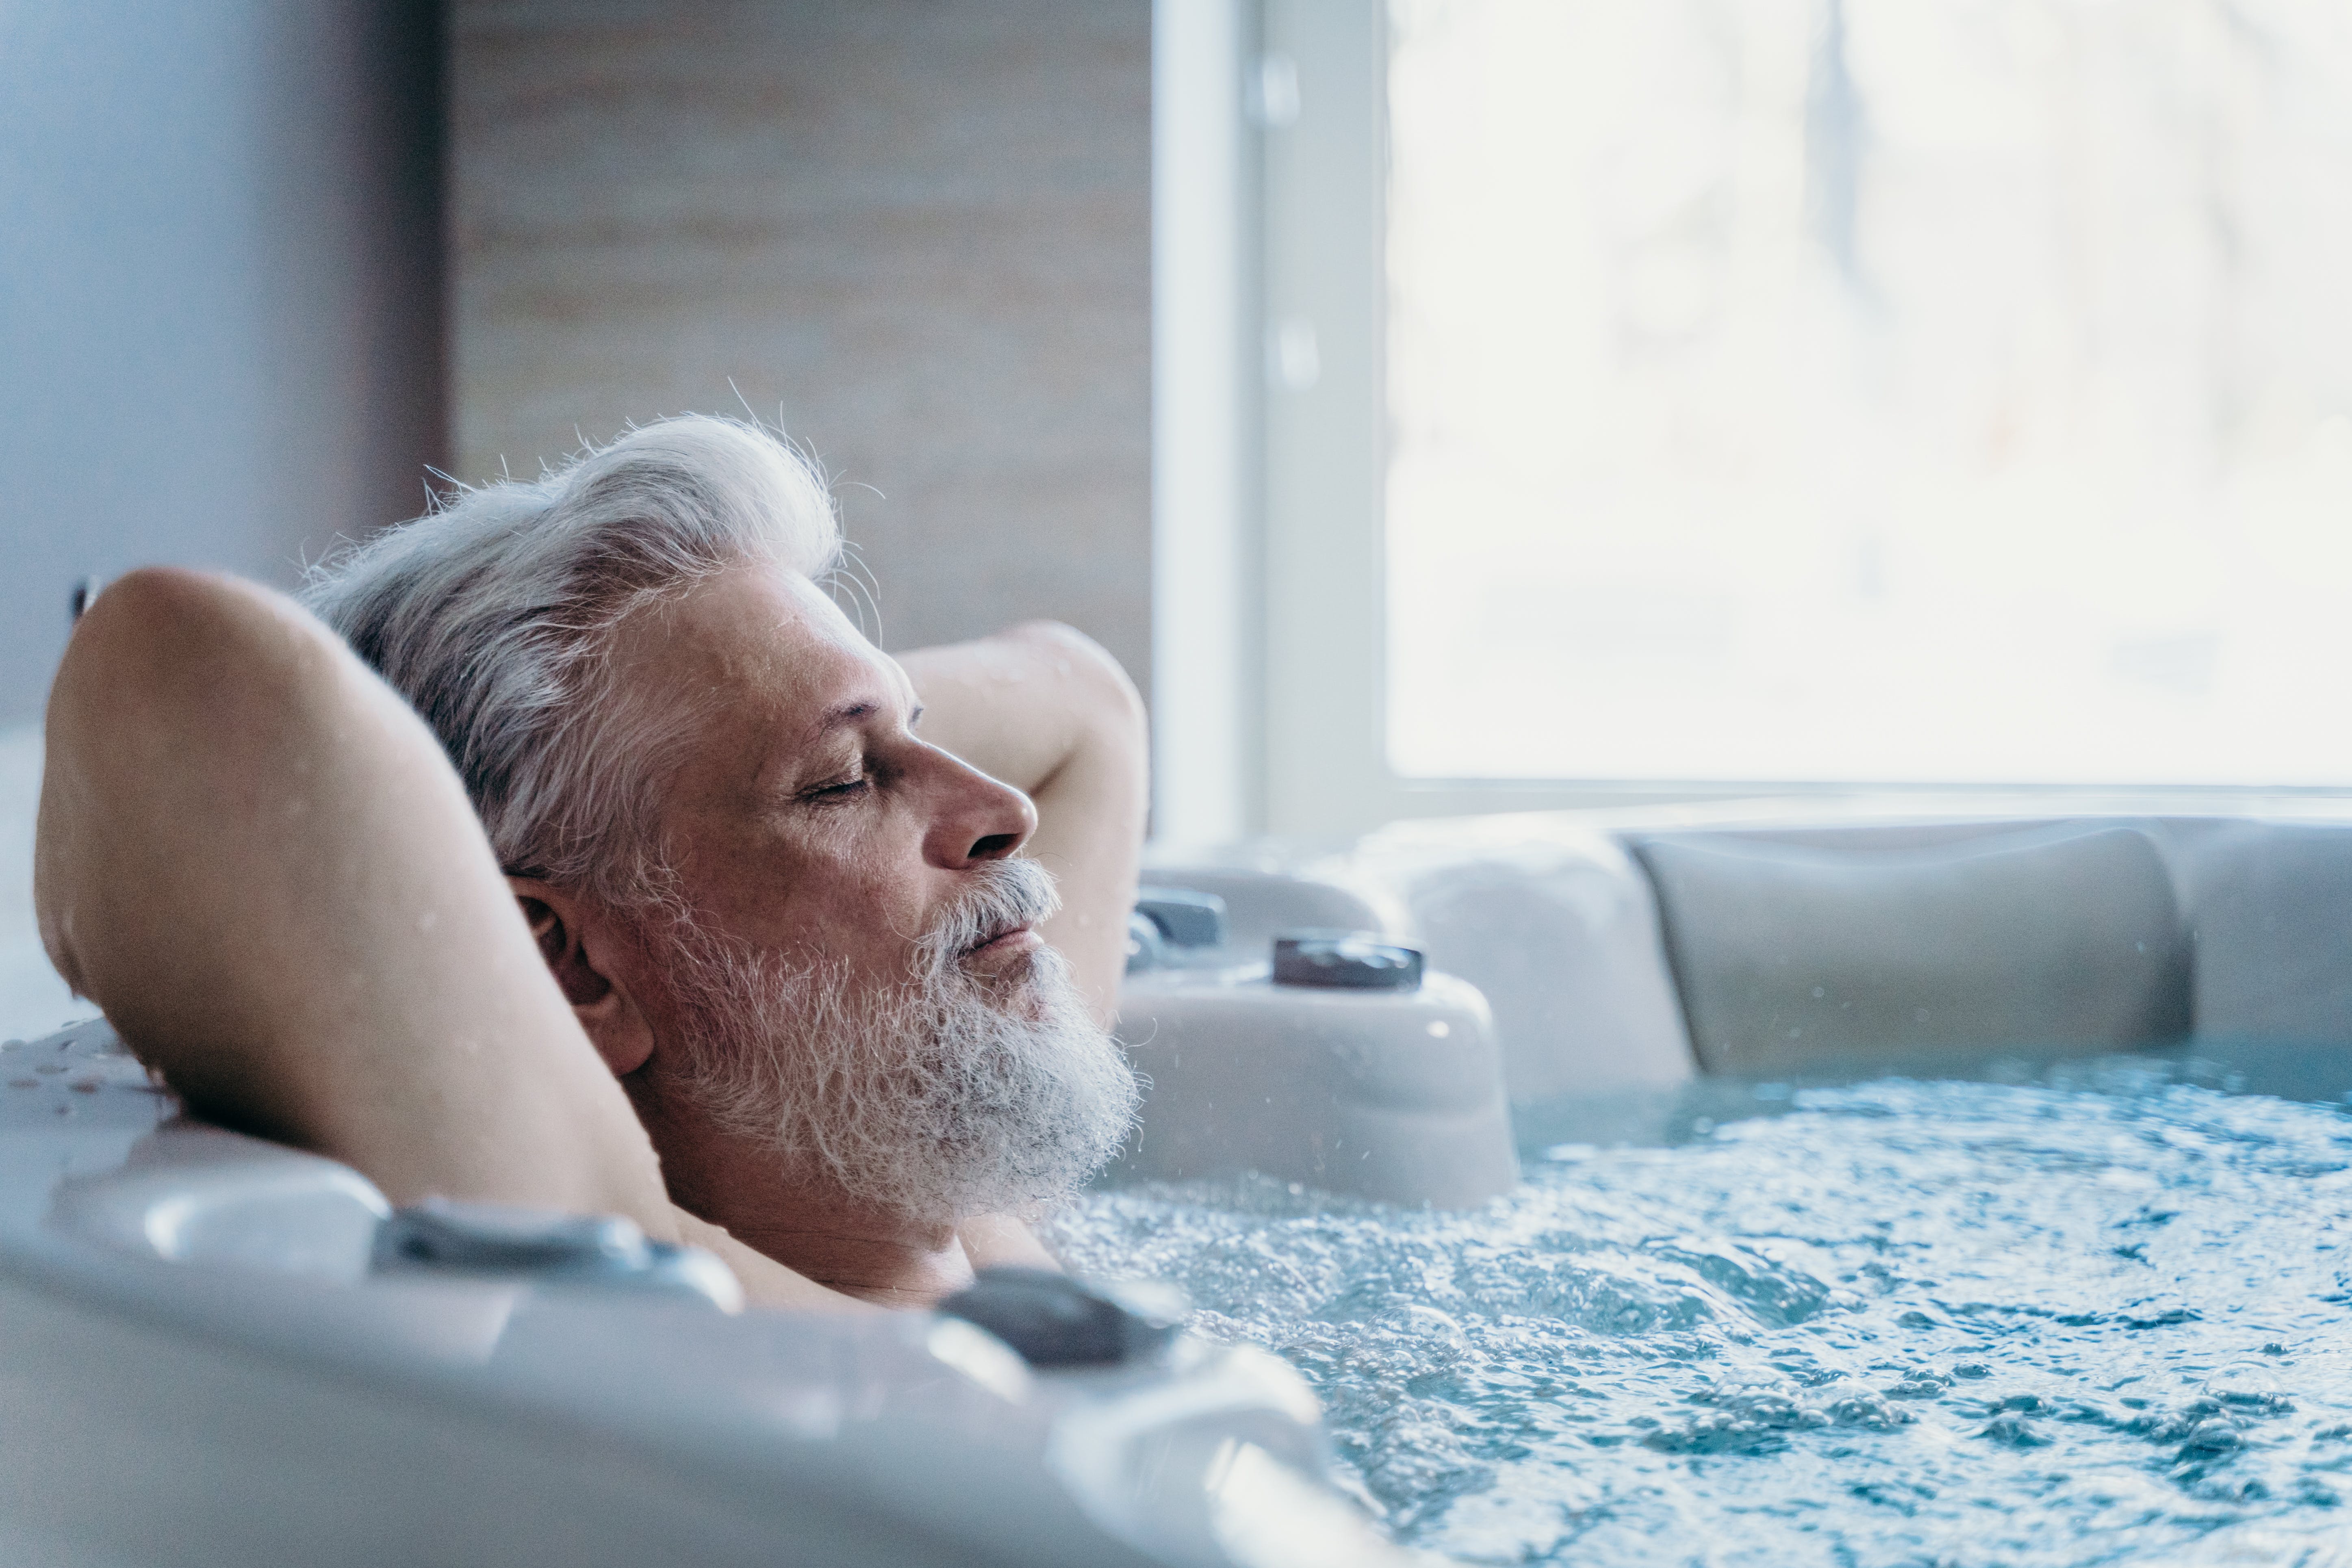 Top 10 beneficios de tener una bañera de hidromasaje en casa